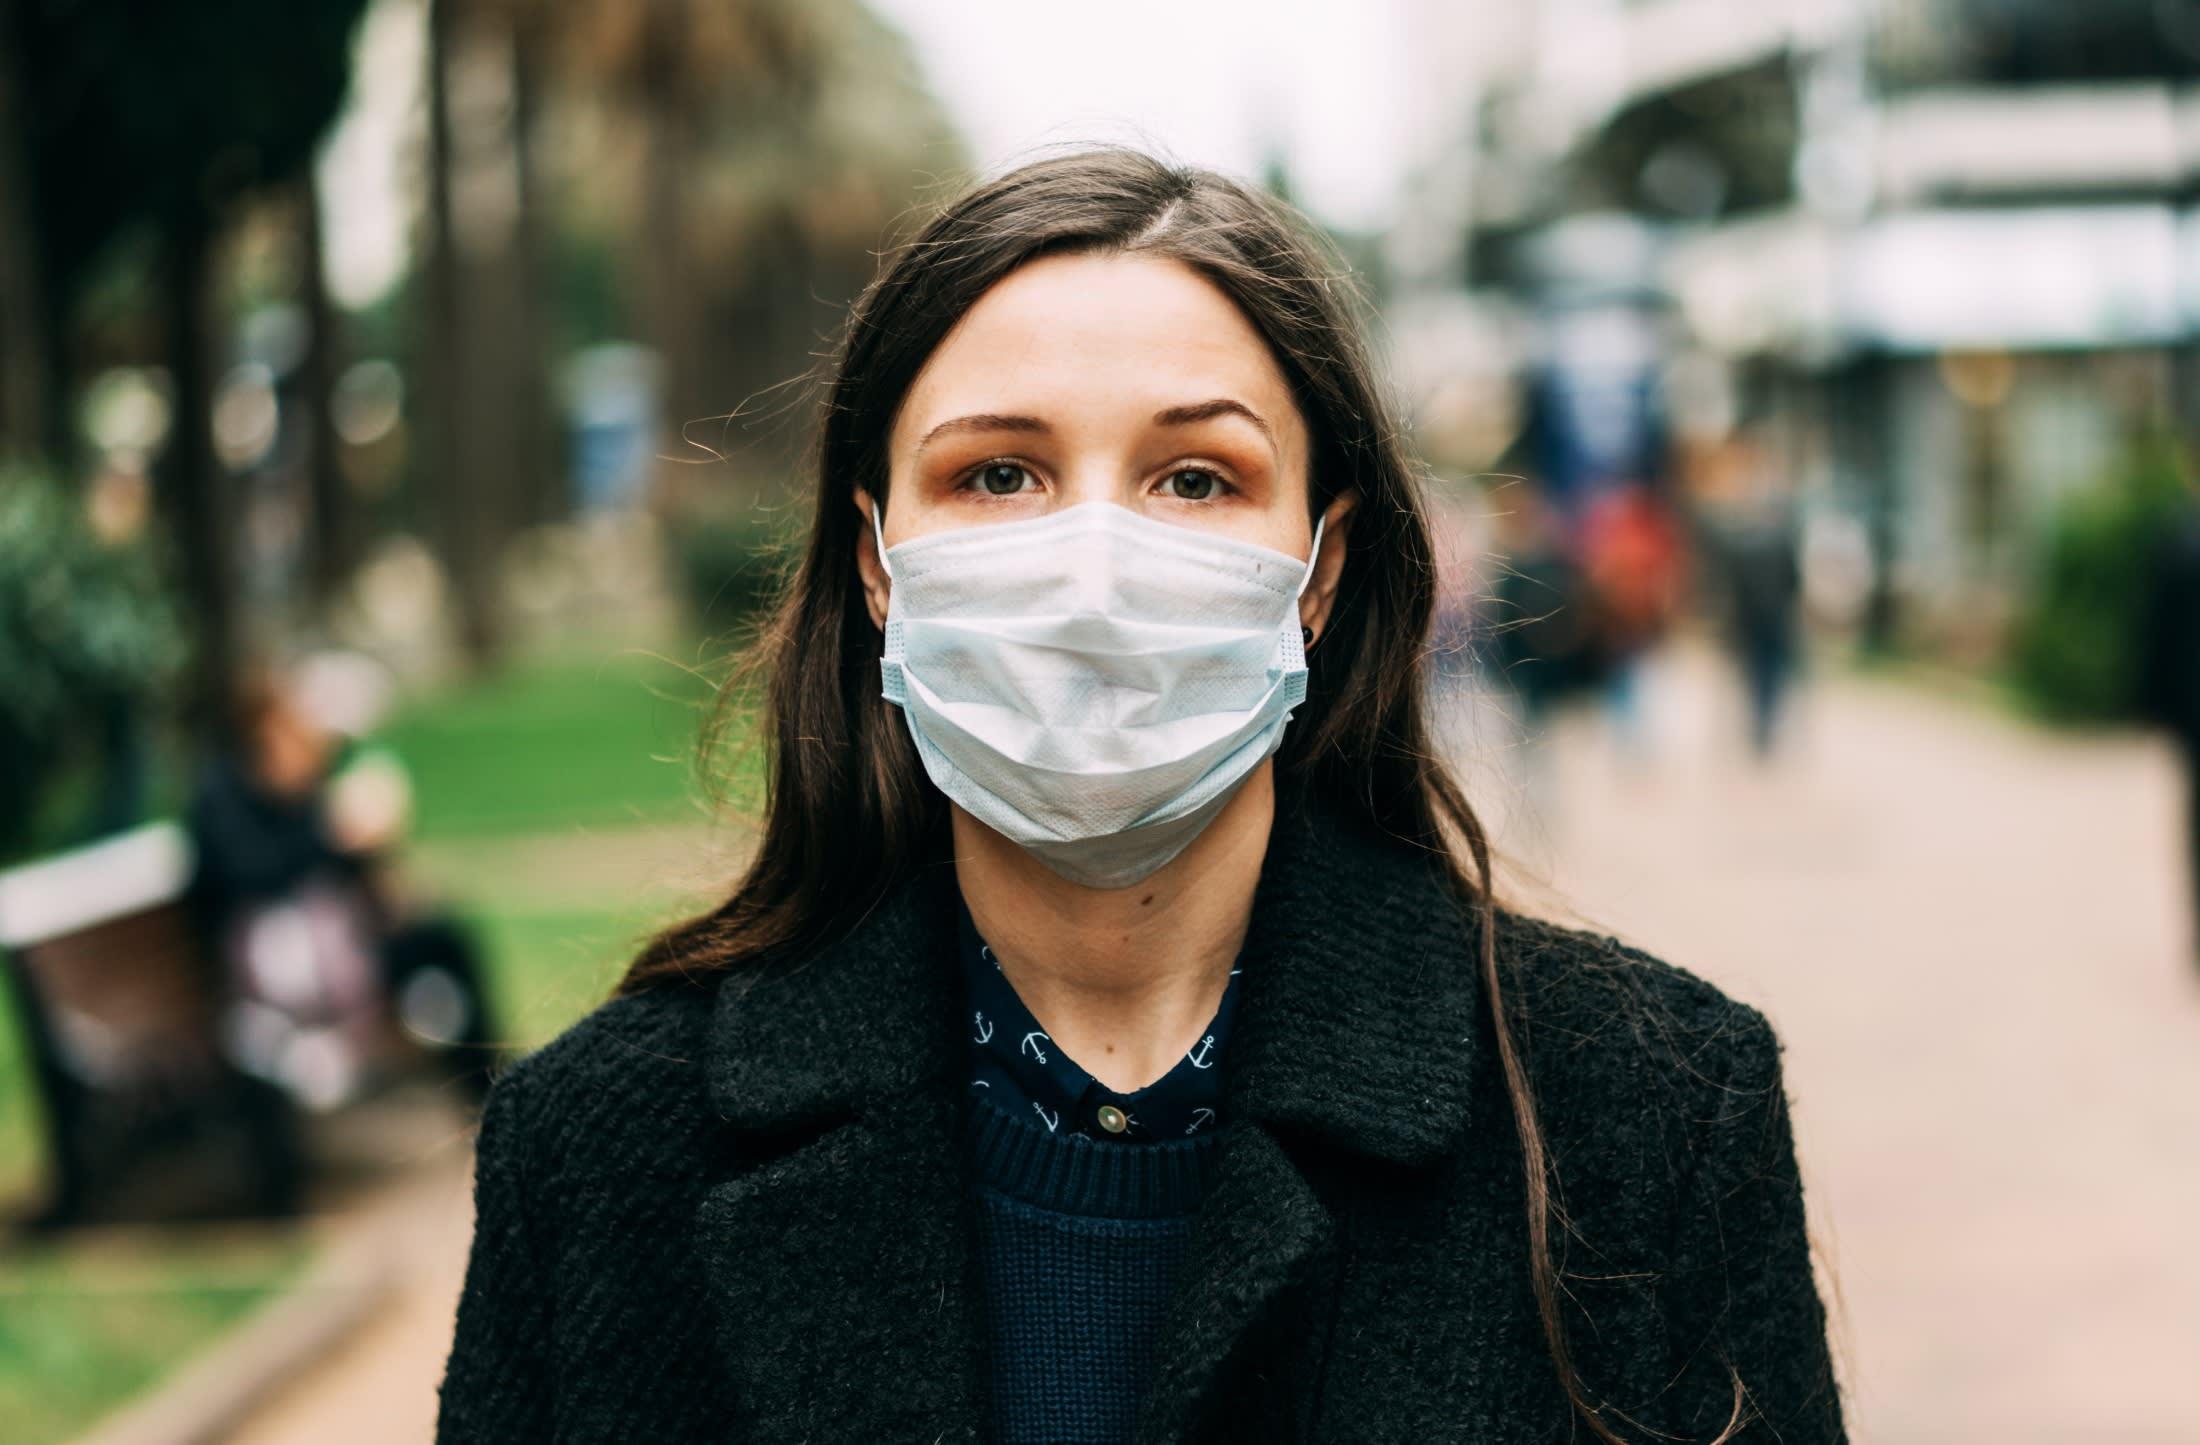 Preko kontaminirane maske patogeni mogu prijeći na naše ruke - Avaz